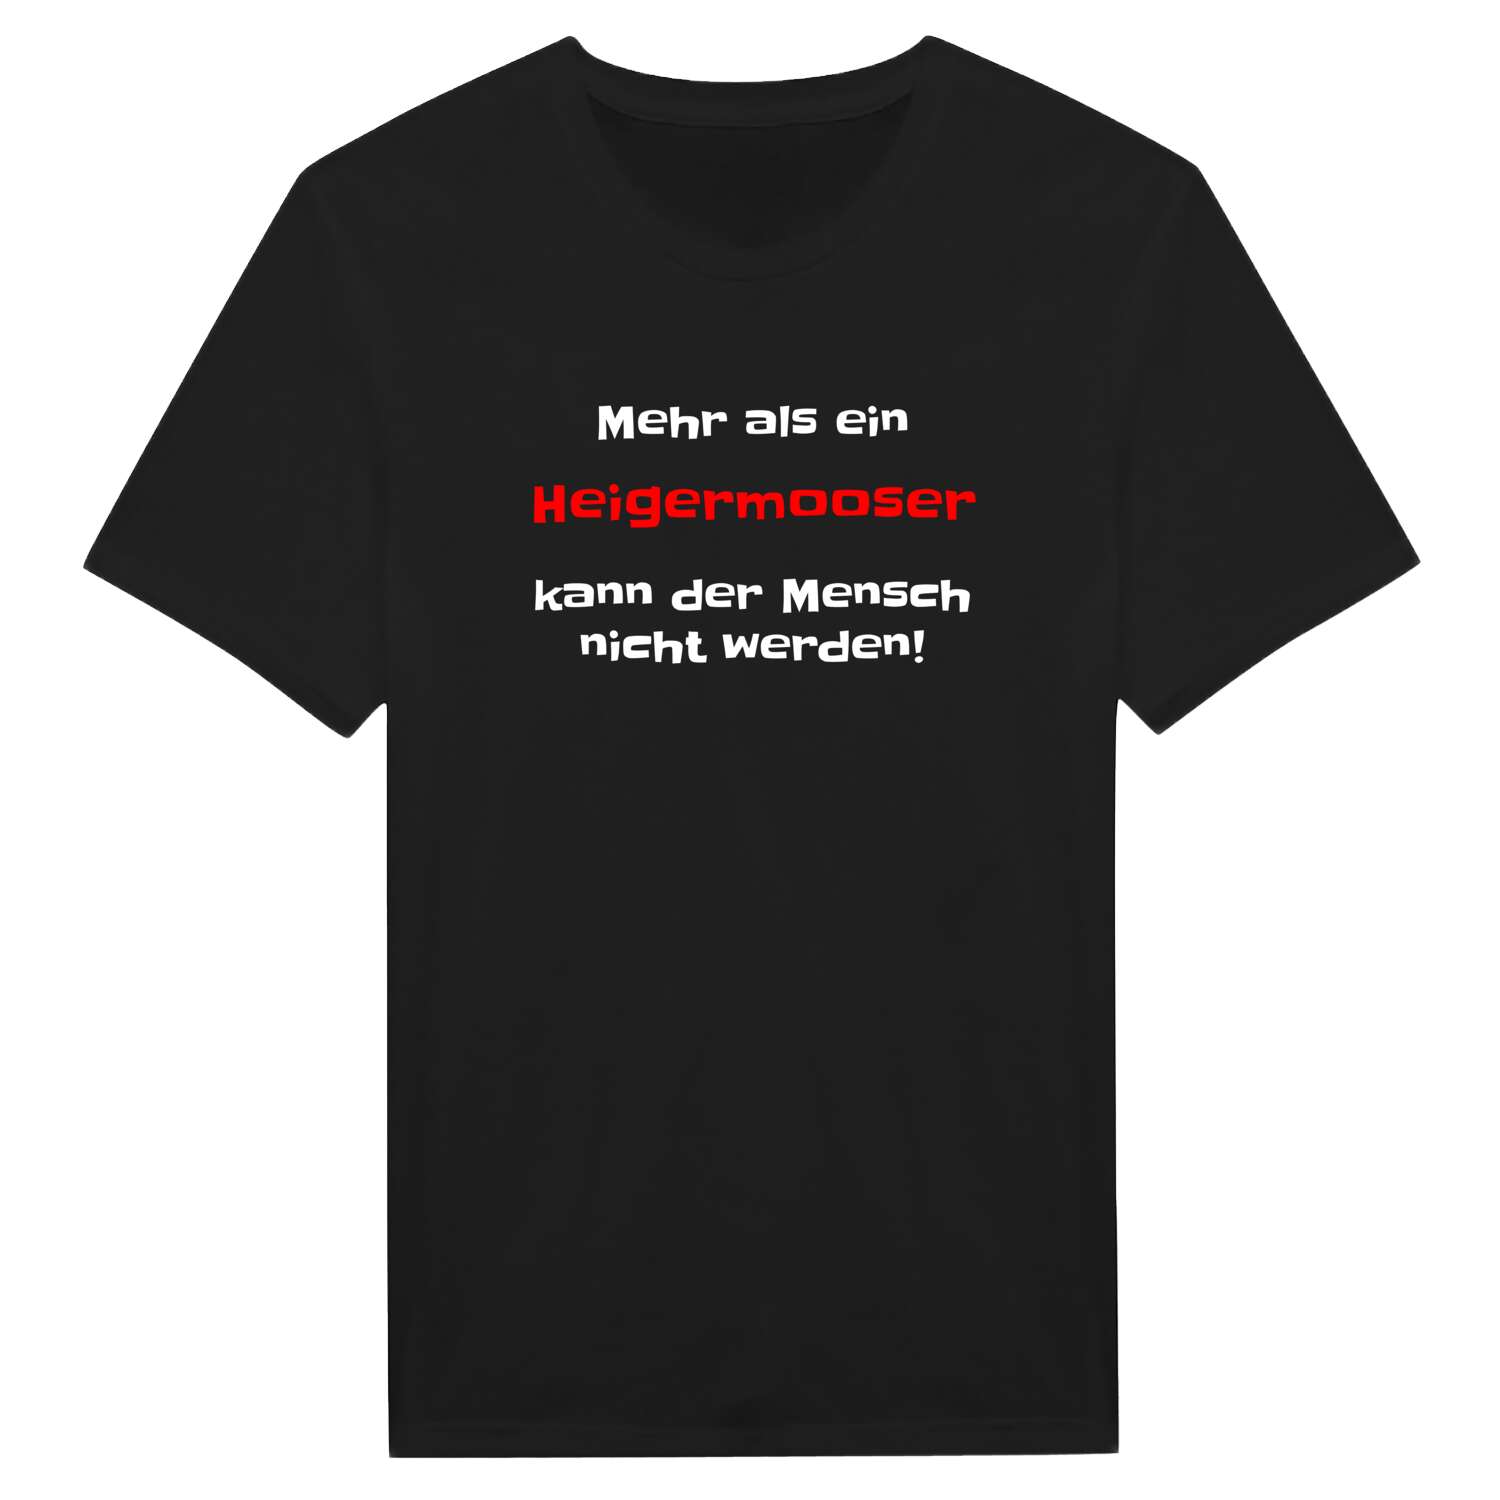 Heigermoos T-Shirt »Mehr als ein«